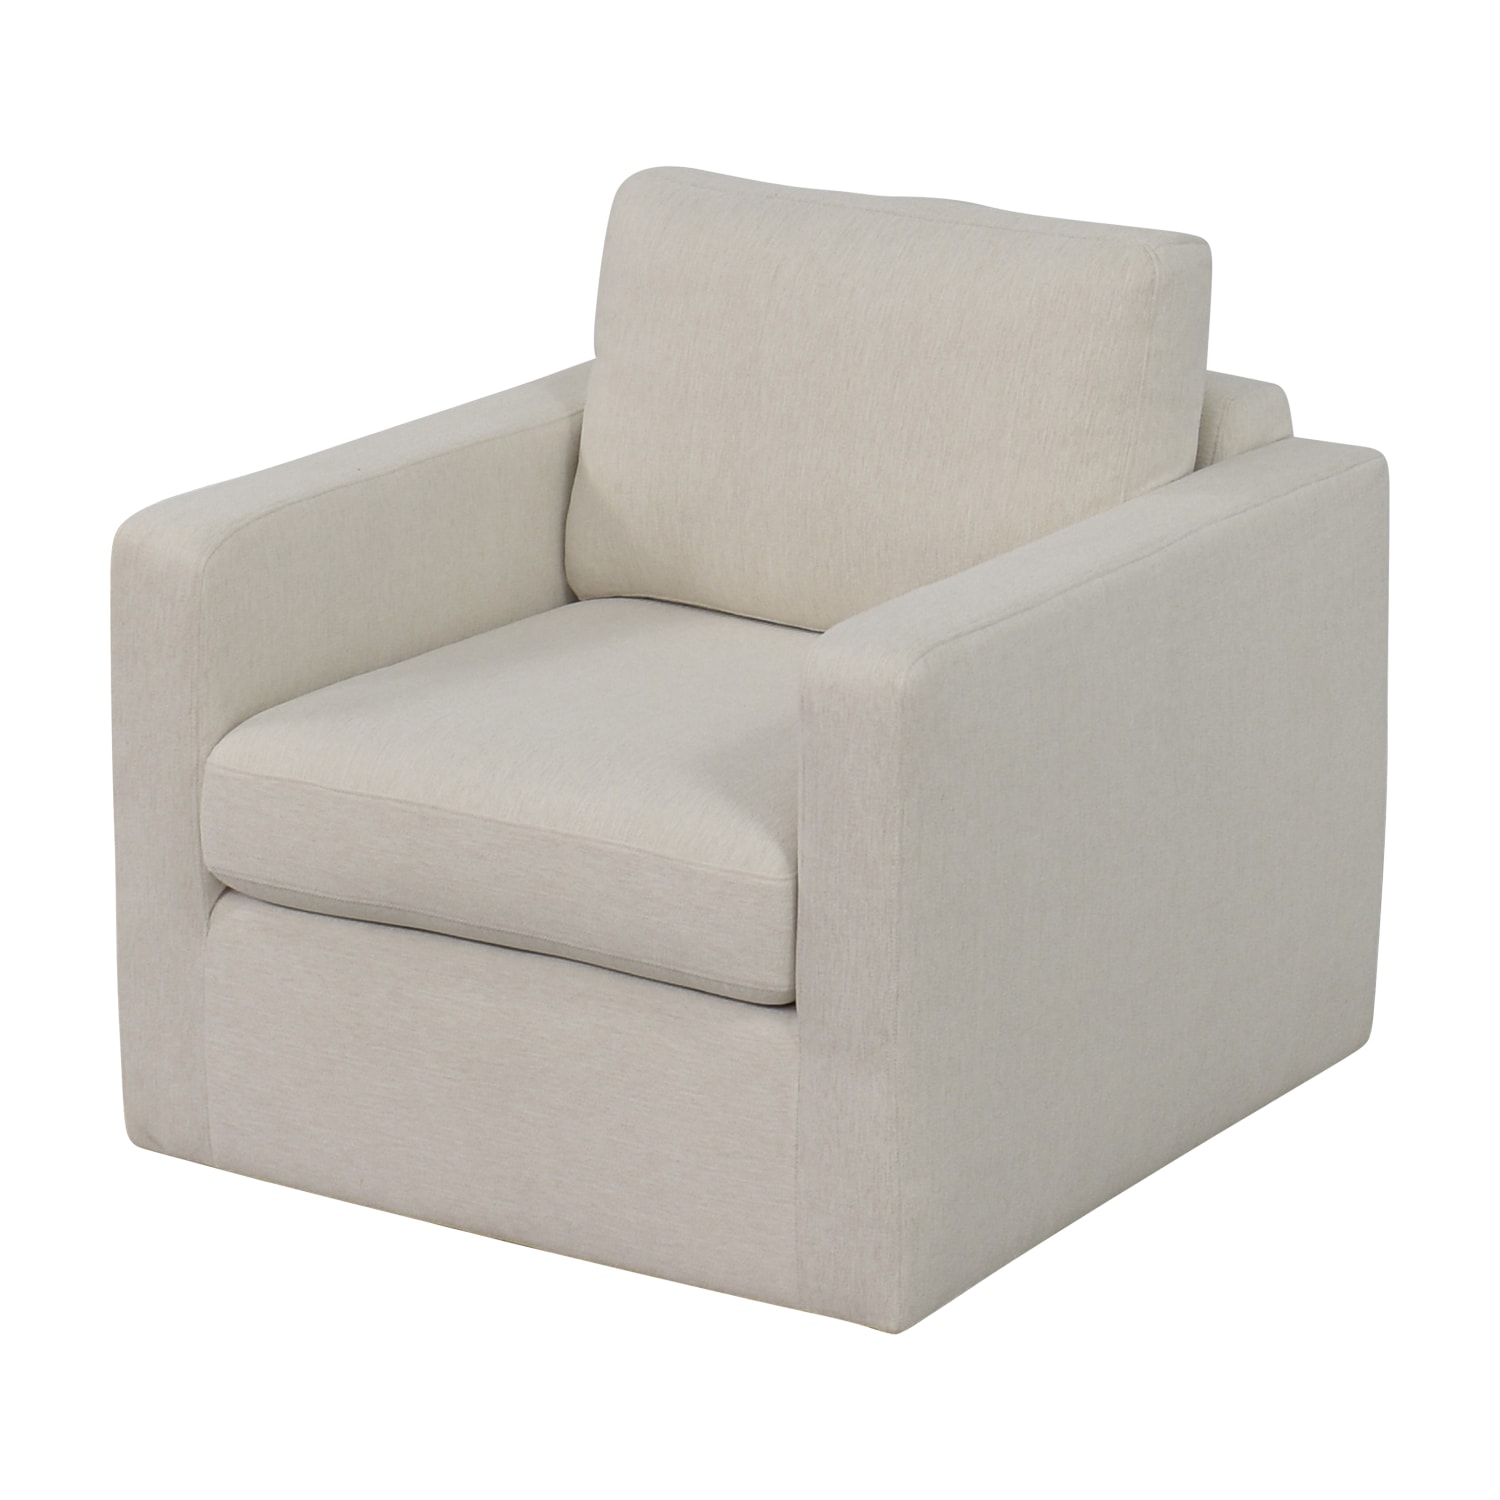 Interior Define Interior Define Charly Swivel Chair dimensions